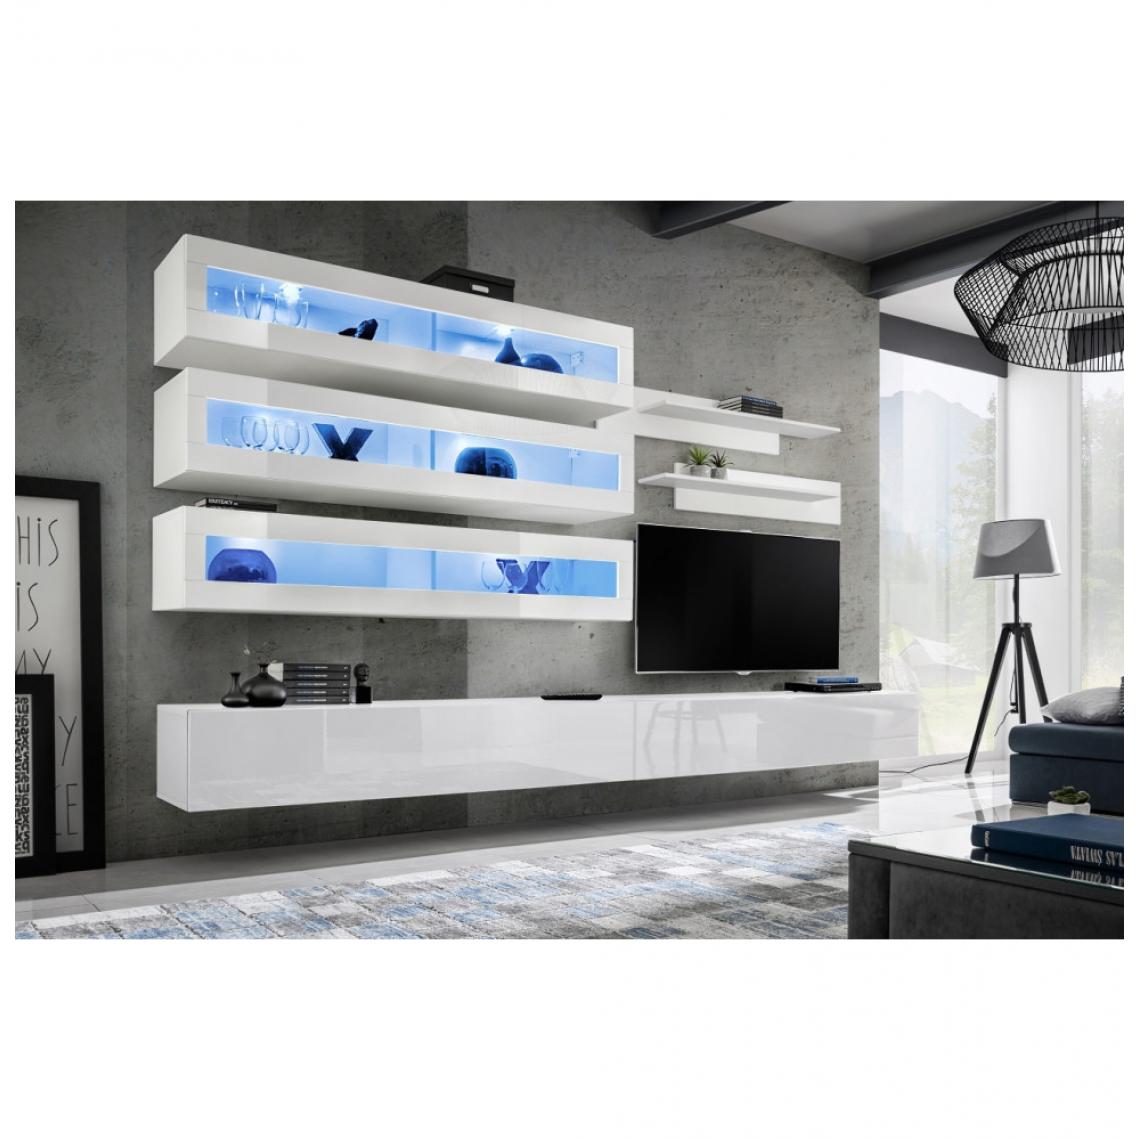 Ac-Deco - Ensemble mural - FLY J - 3 rangements LED - 2 meubles TV - 2 étagères - Blanc - Modèle 1 - Meubles TV, Hi-Fi